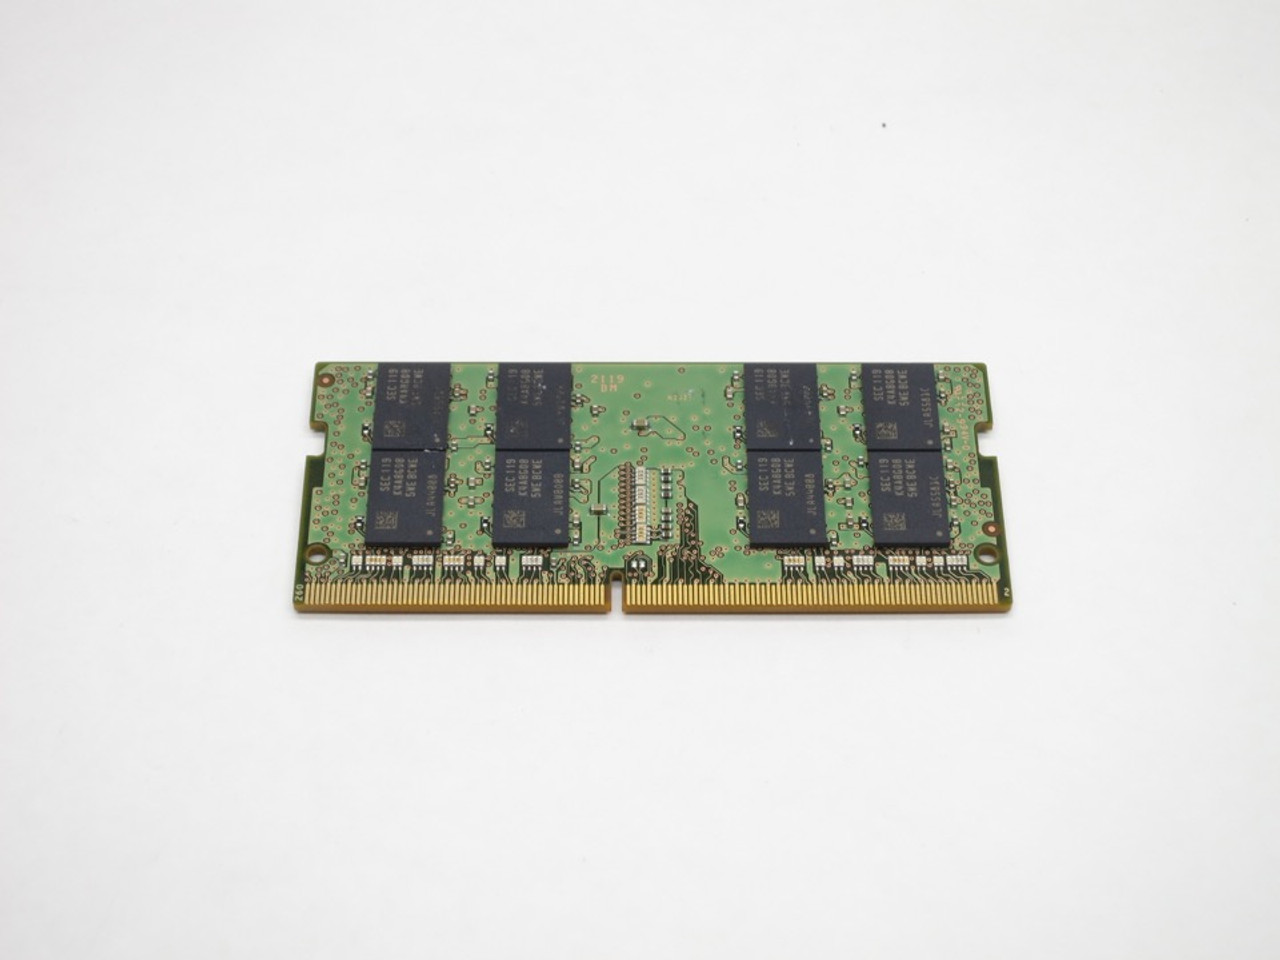 M471A2K43EB1-CWE - Samsung 1x 16GB DDR4-3200 SODIMM